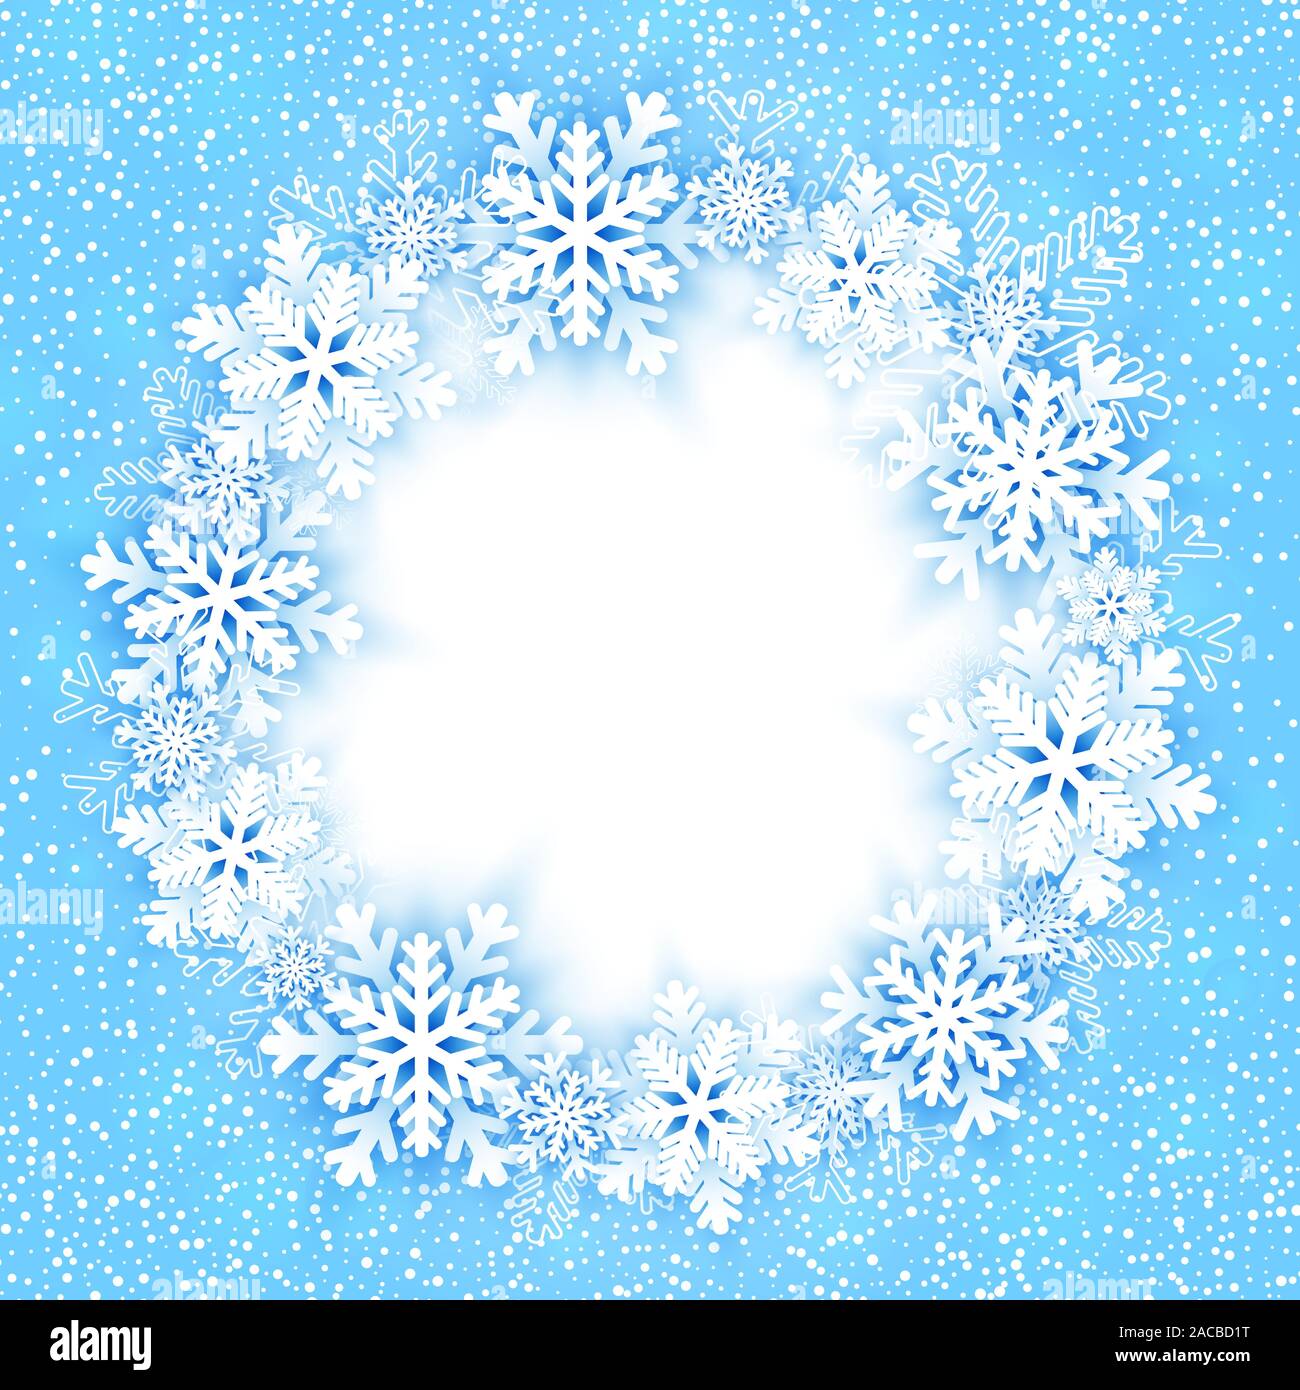 Weihnachten runden Rahmen mit Schneeflocken. Vector Illustration Stock Vektor